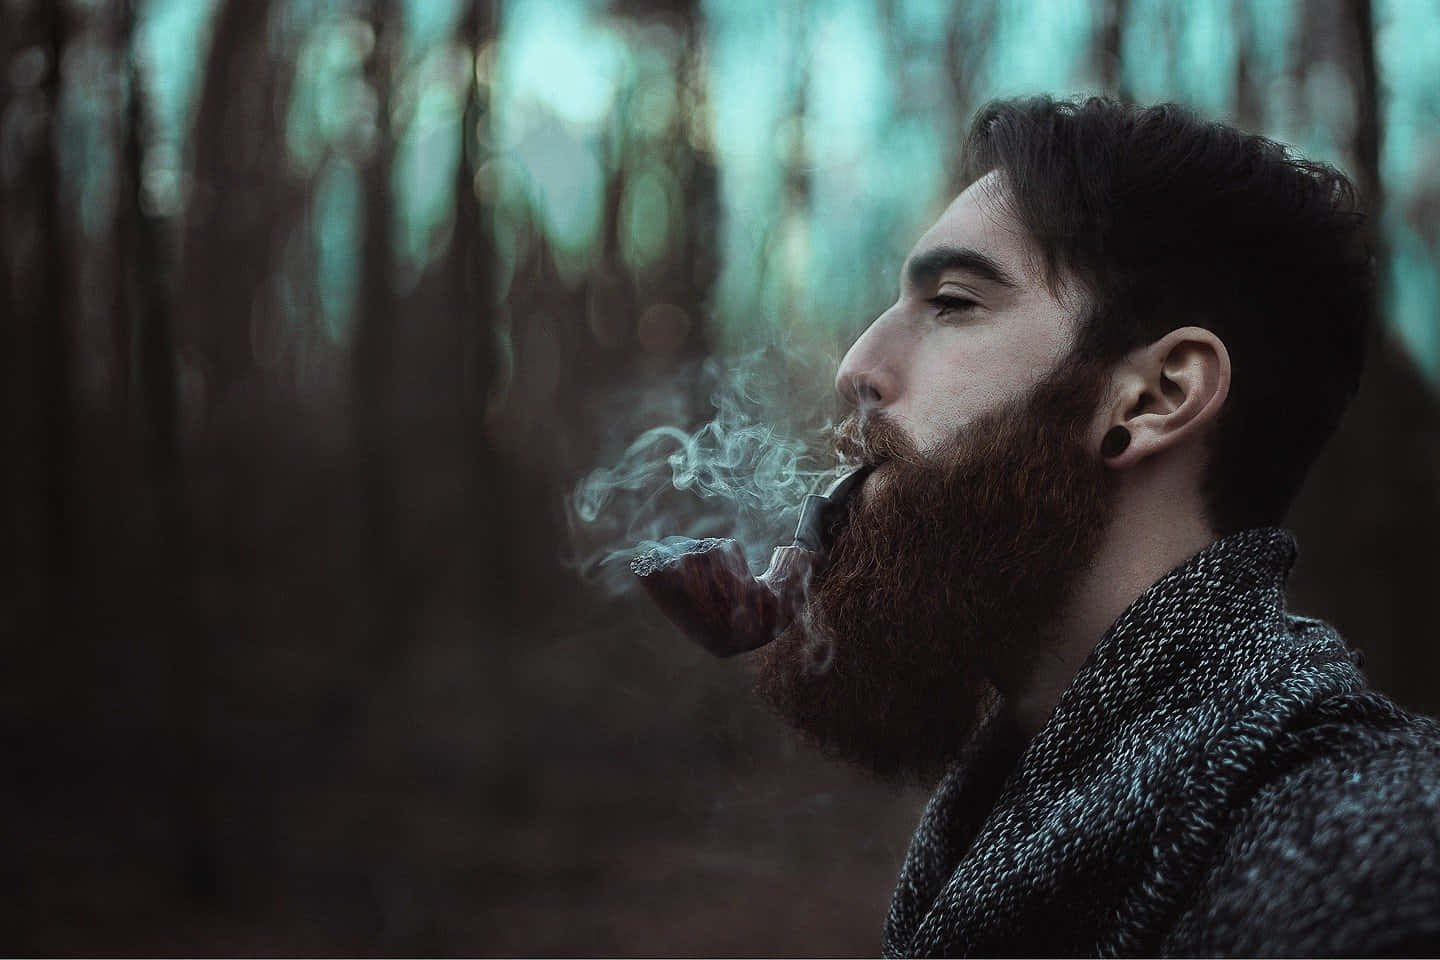 Man Smoking With Sadness